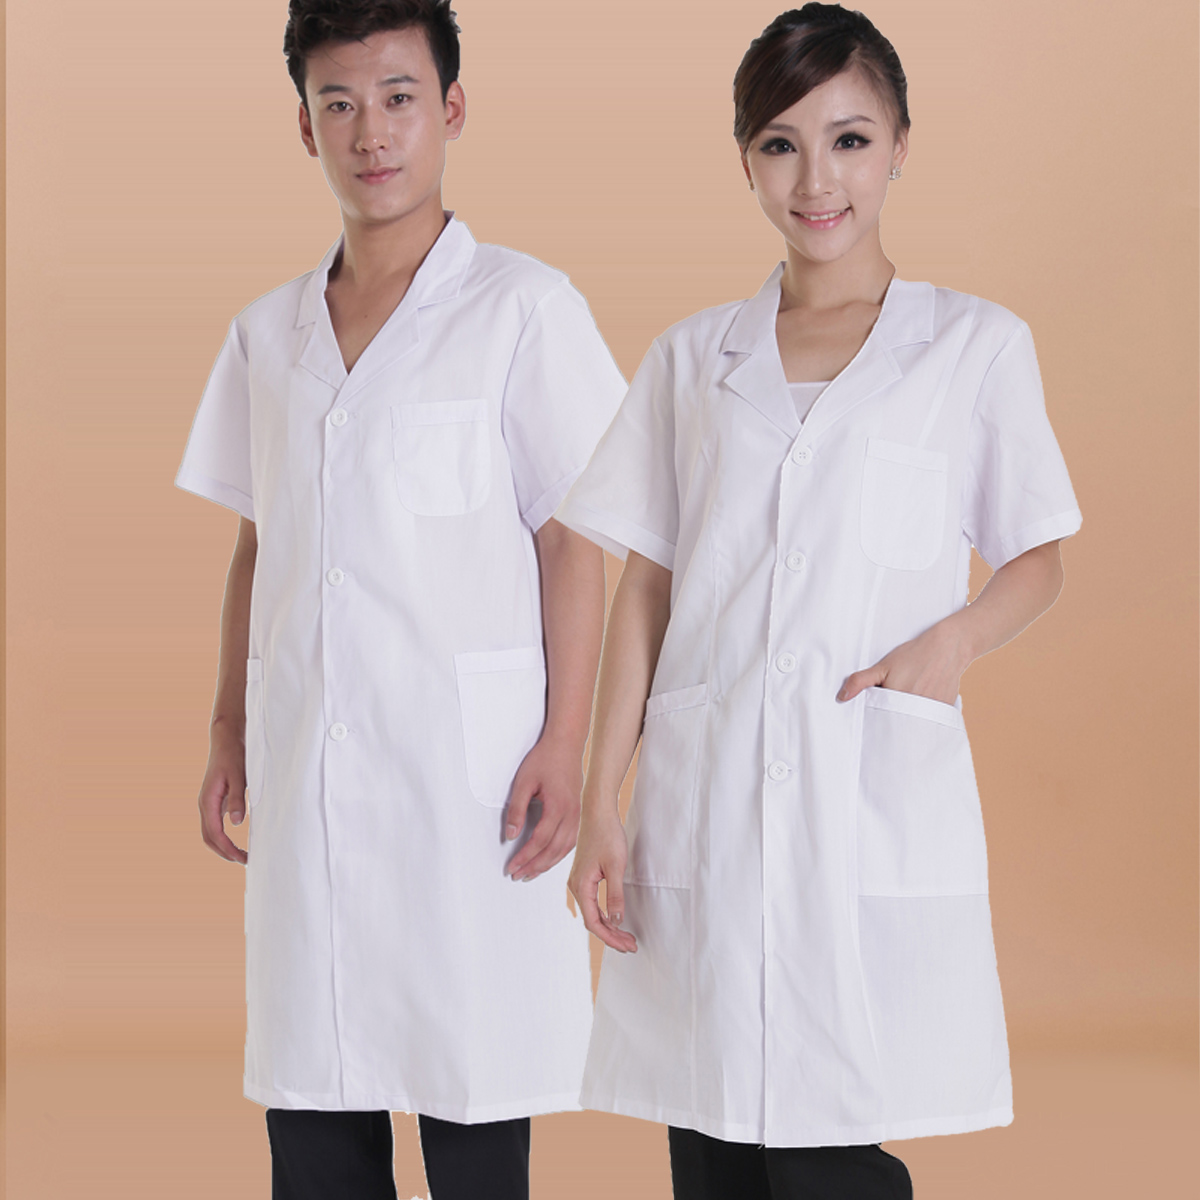 医生护士短袖白大褂工作服 验室服 化验室夏季涤棉短袖白大褂吸汗-阿里巴巴